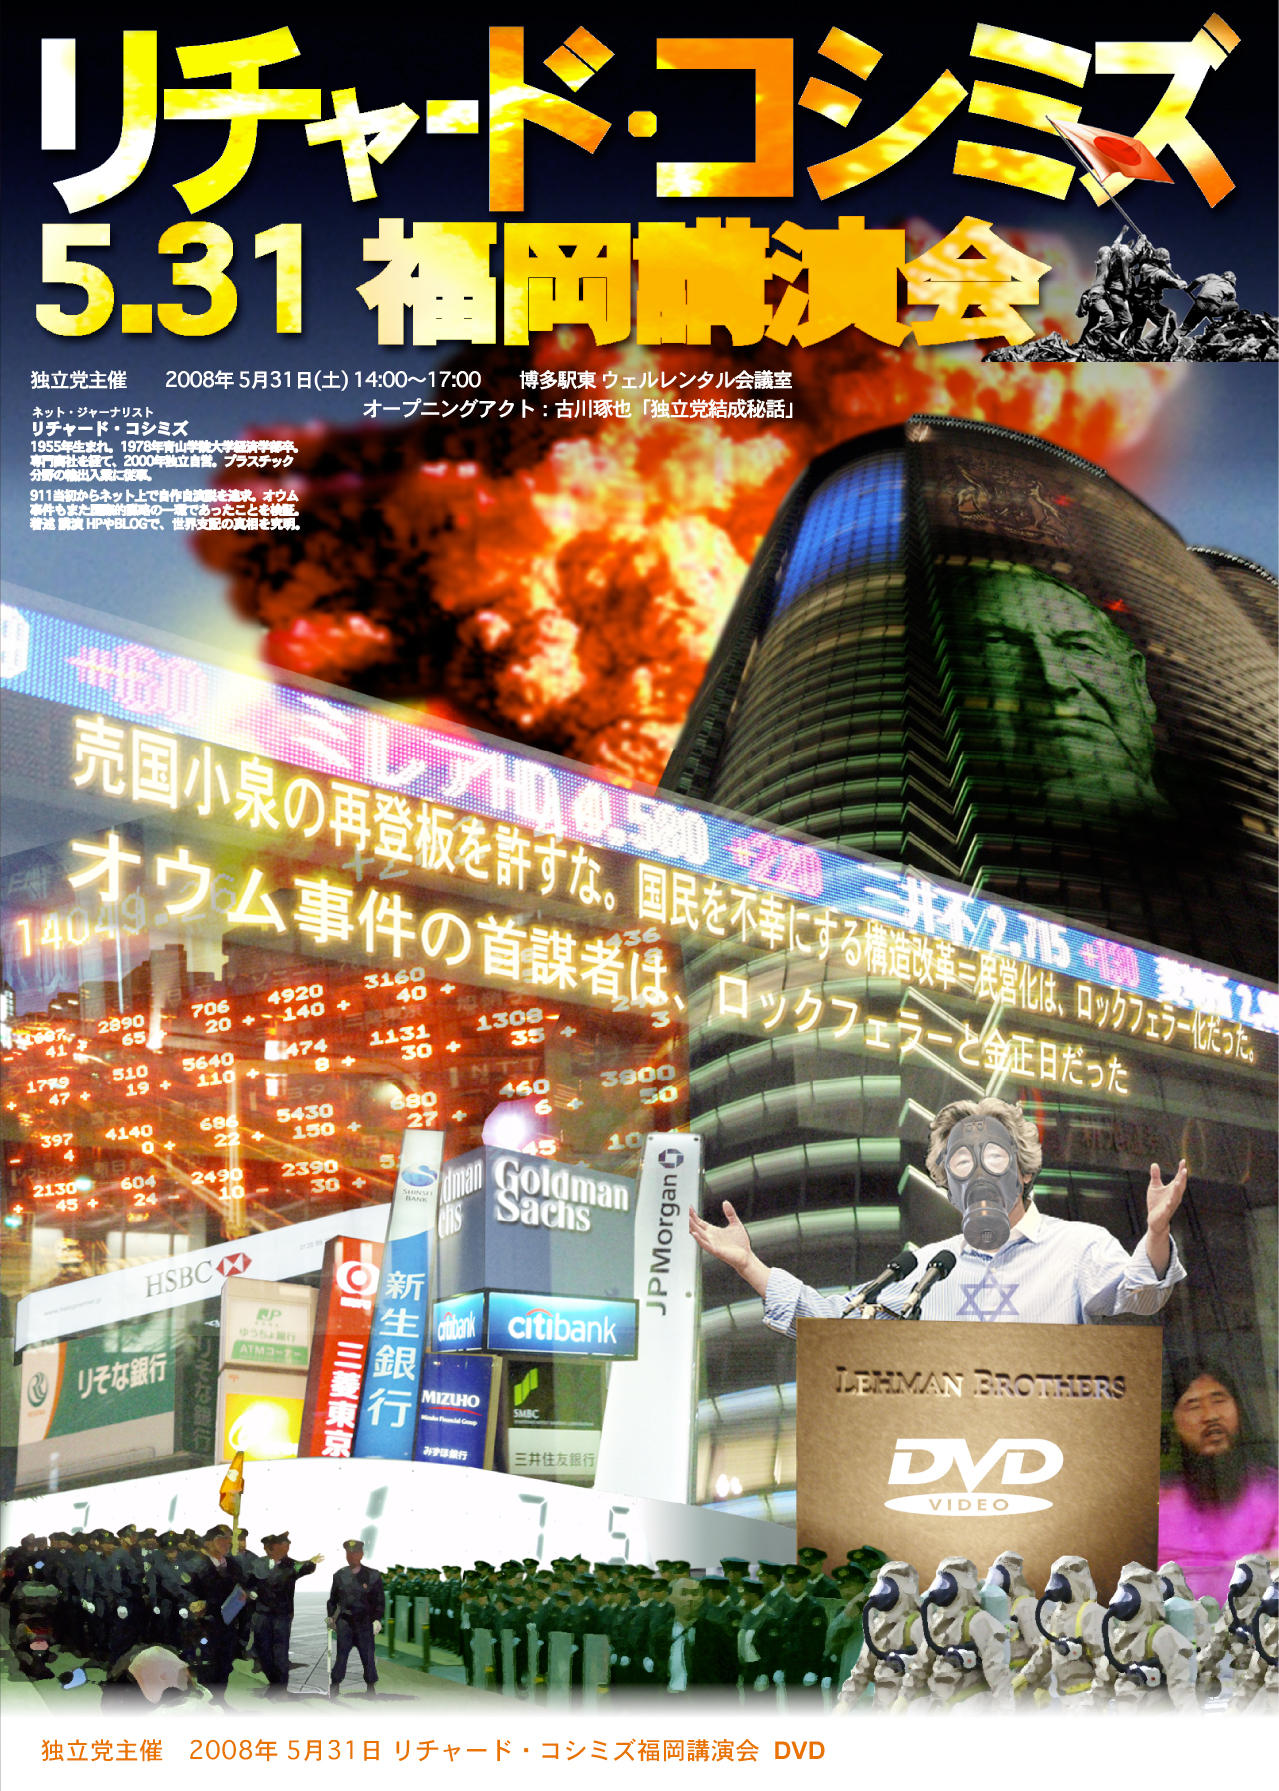 リチャード・コシミズ5.31福岡講演会DVD